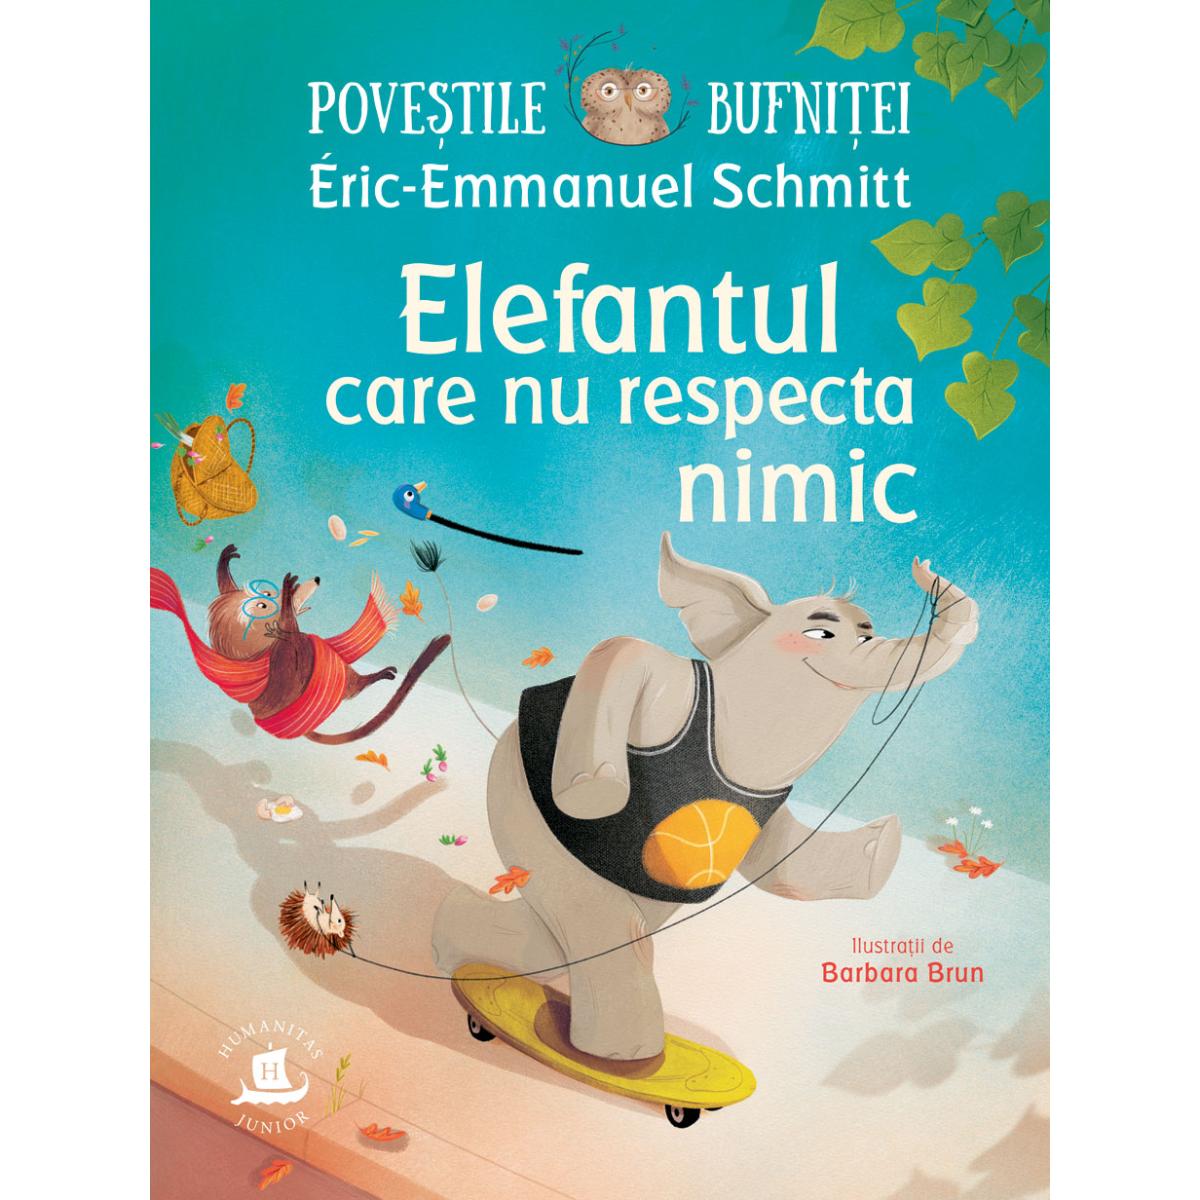 Povestile bufnitei, Elefantul care nu respecta nimic, Eric-Emmanuel Schmitt